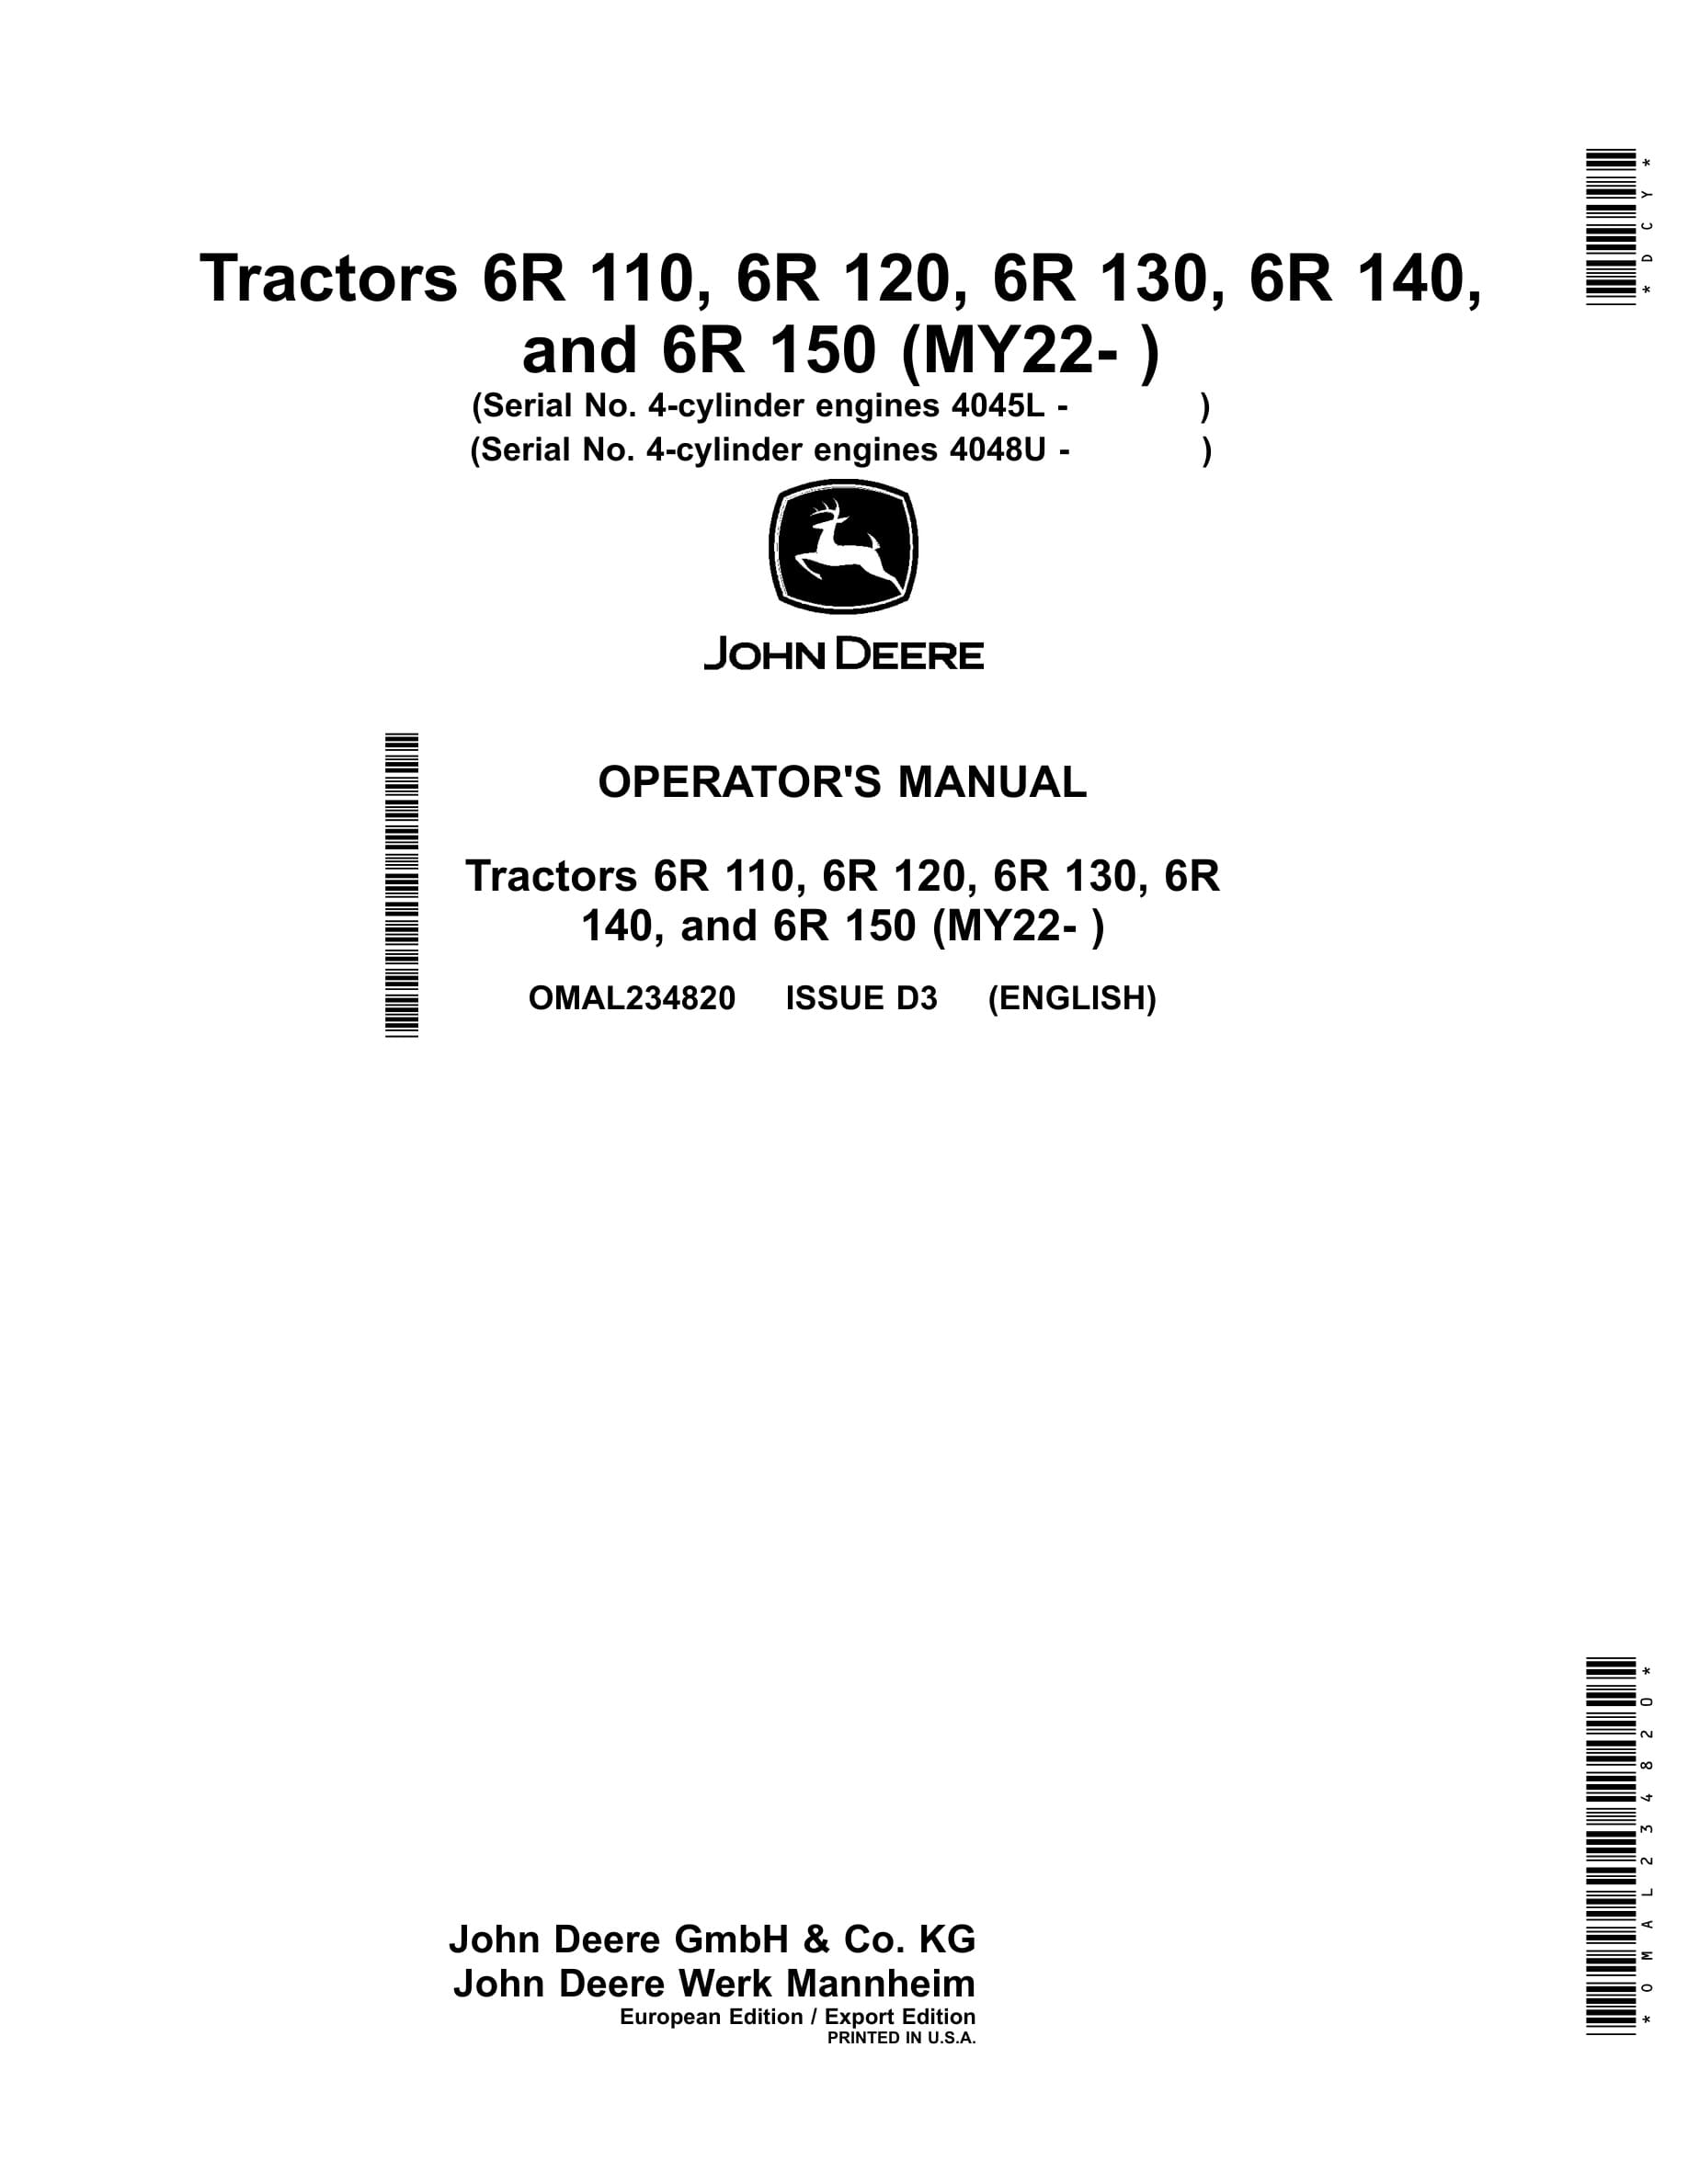 John Deere 6r 110, 6r 120, 6r 130, 6r 140, And 6r 150 (my22 Operator Manuals OMAL234820-1